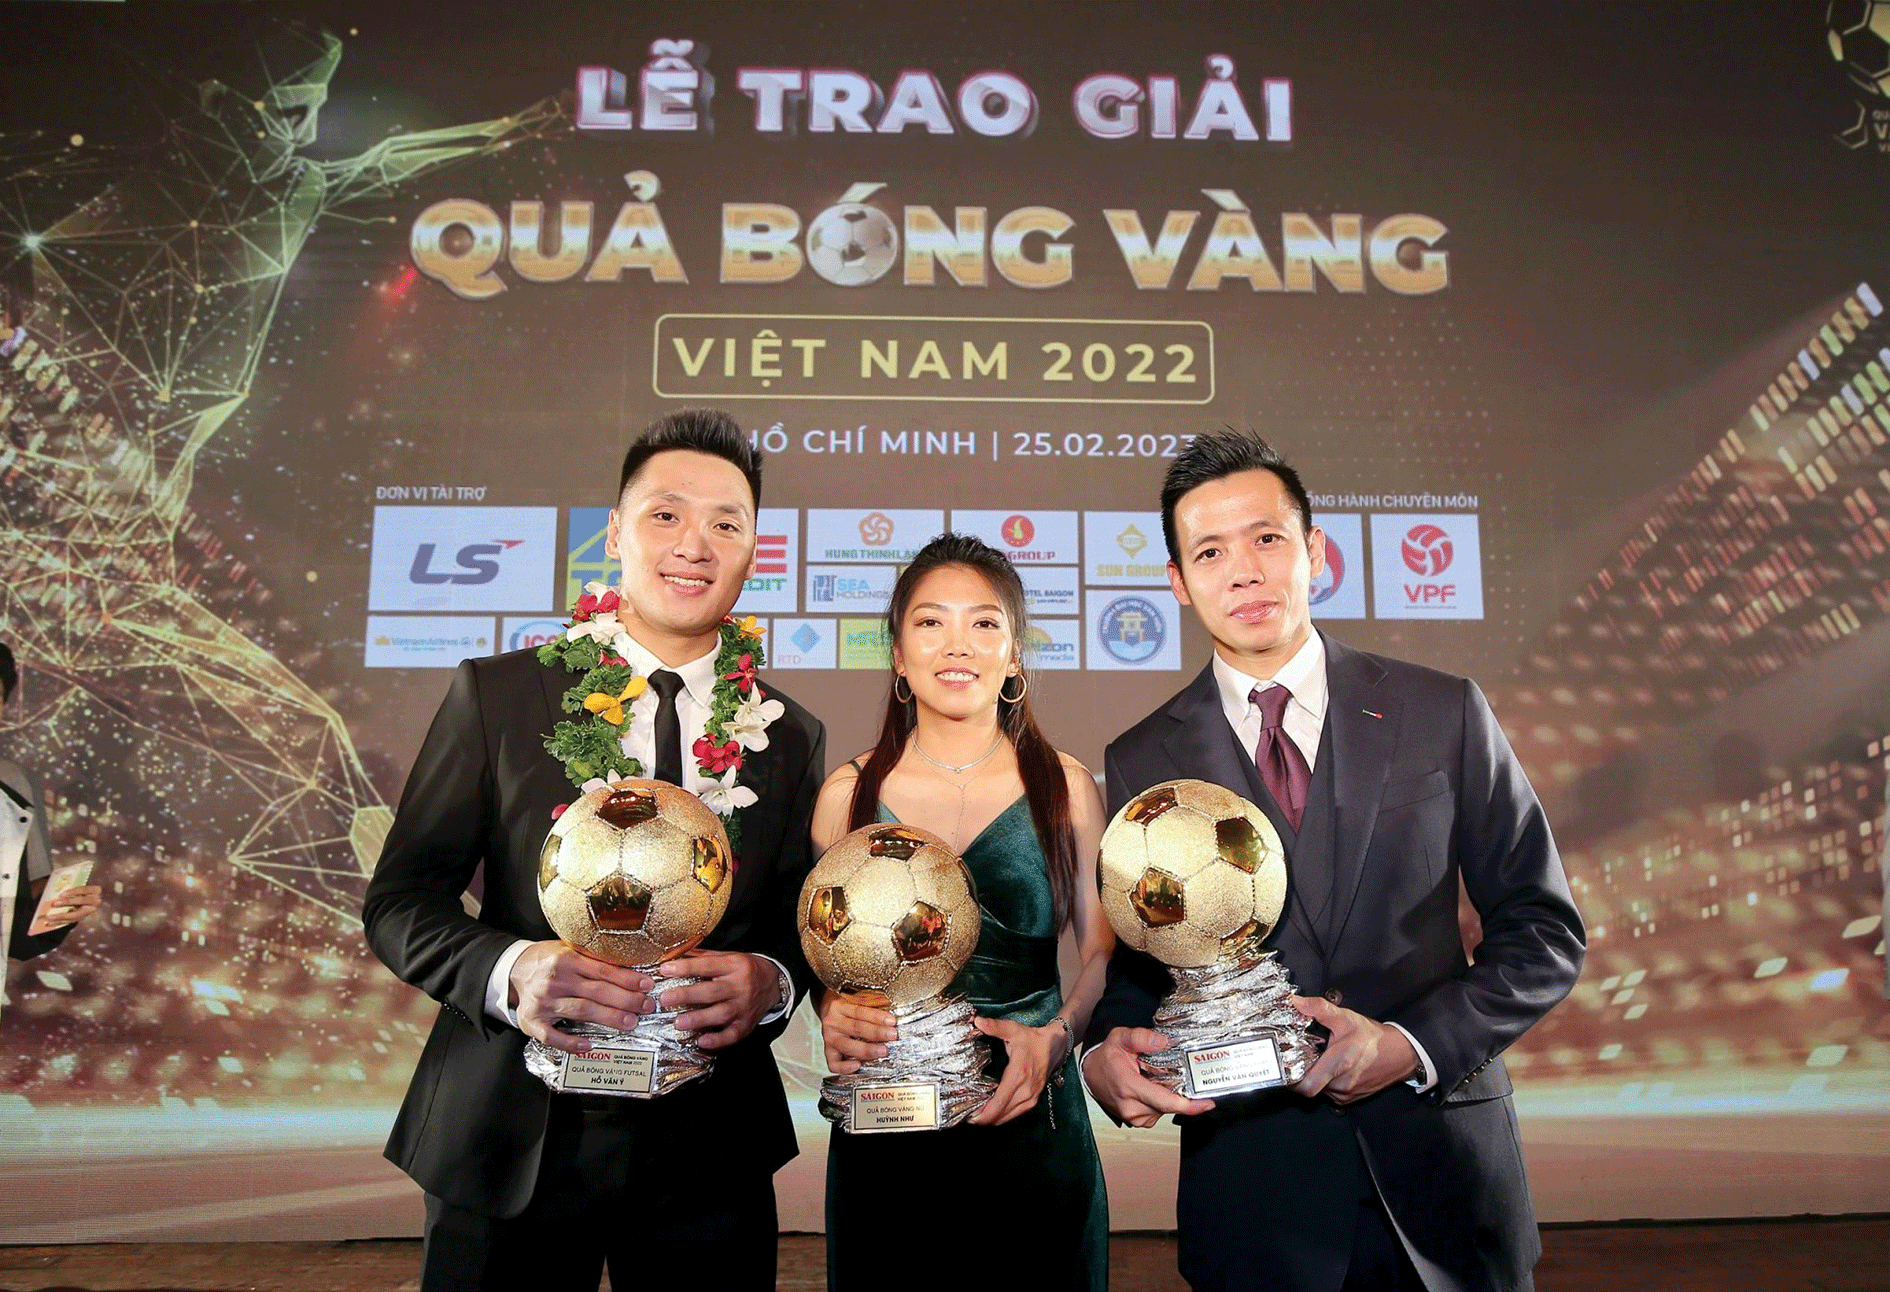 Các cầu thủ Hồ Văn Ý, Huỳnh Như và Văn Quyết nhận danh hiệu Quả bóng vàng Việt Nam năm 2022. Ảnh: DŨNG PHƯƠNG